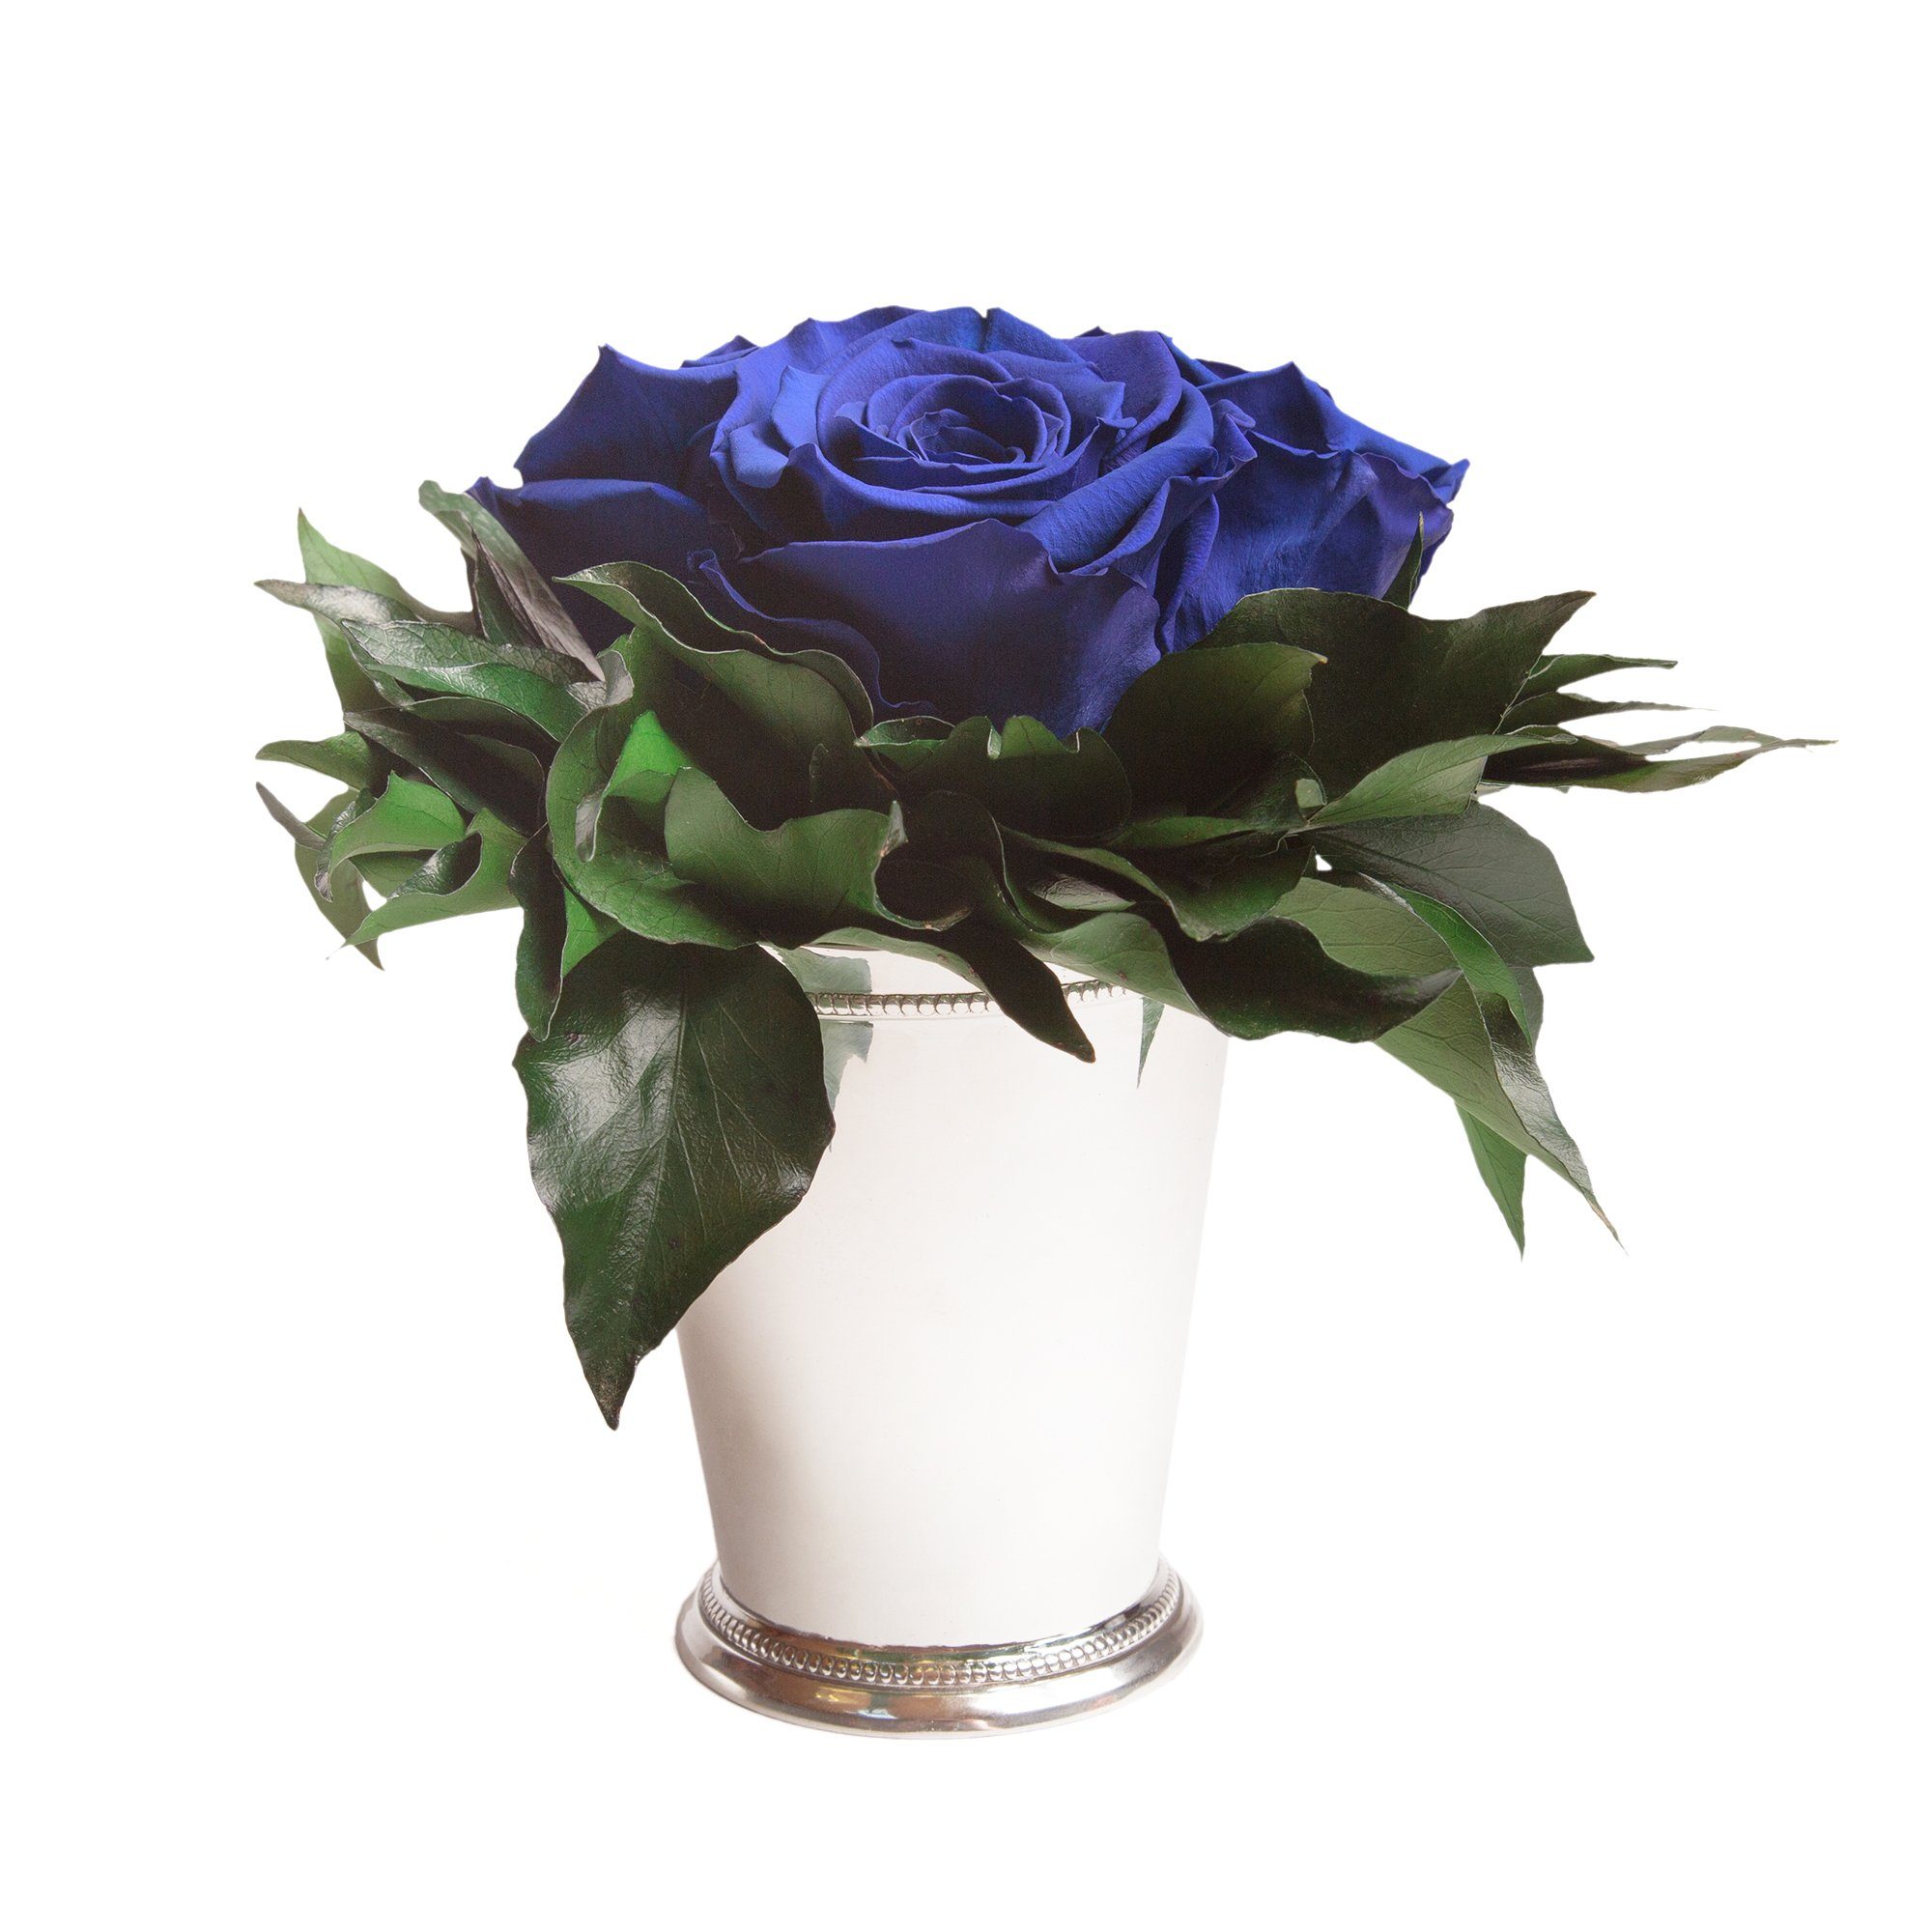 Kunstorchidee 3 Infinity Rosen silberfarbene Vase Wohnzimmer Deko Blumenstrauß Rose, ROSEMARIE SCHULZ Heidelberg, Höhe 15 cm, Rose haltbar bis zu 3 Jahre Blau | Kunstorchideen